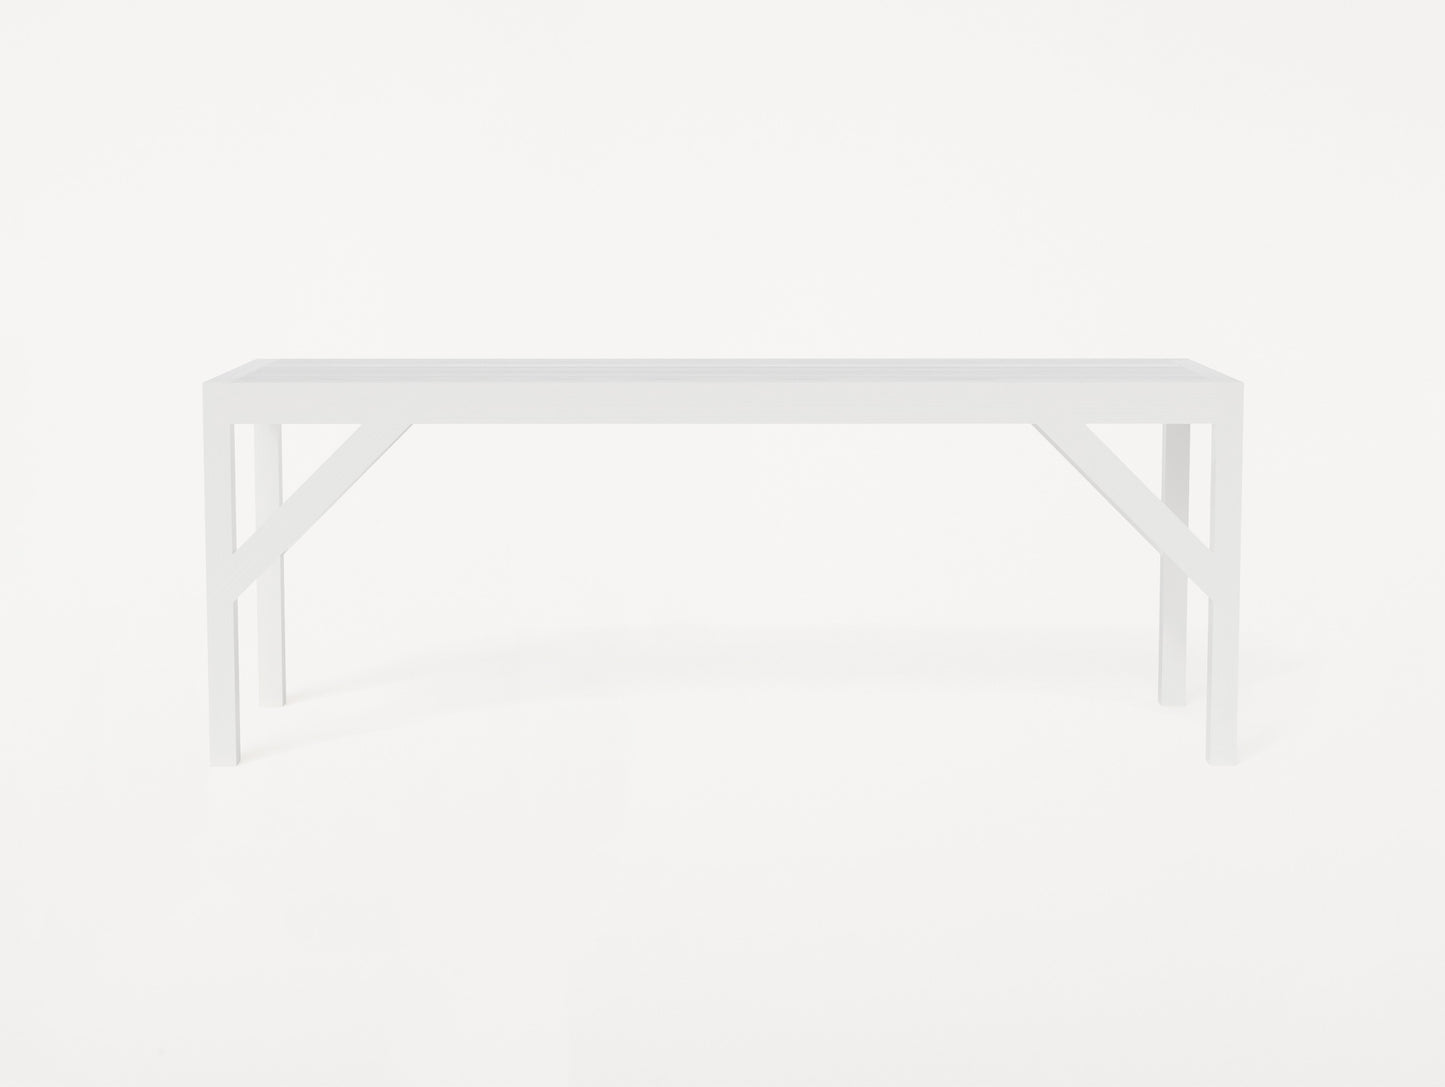 Bracket Bench by Frama - White